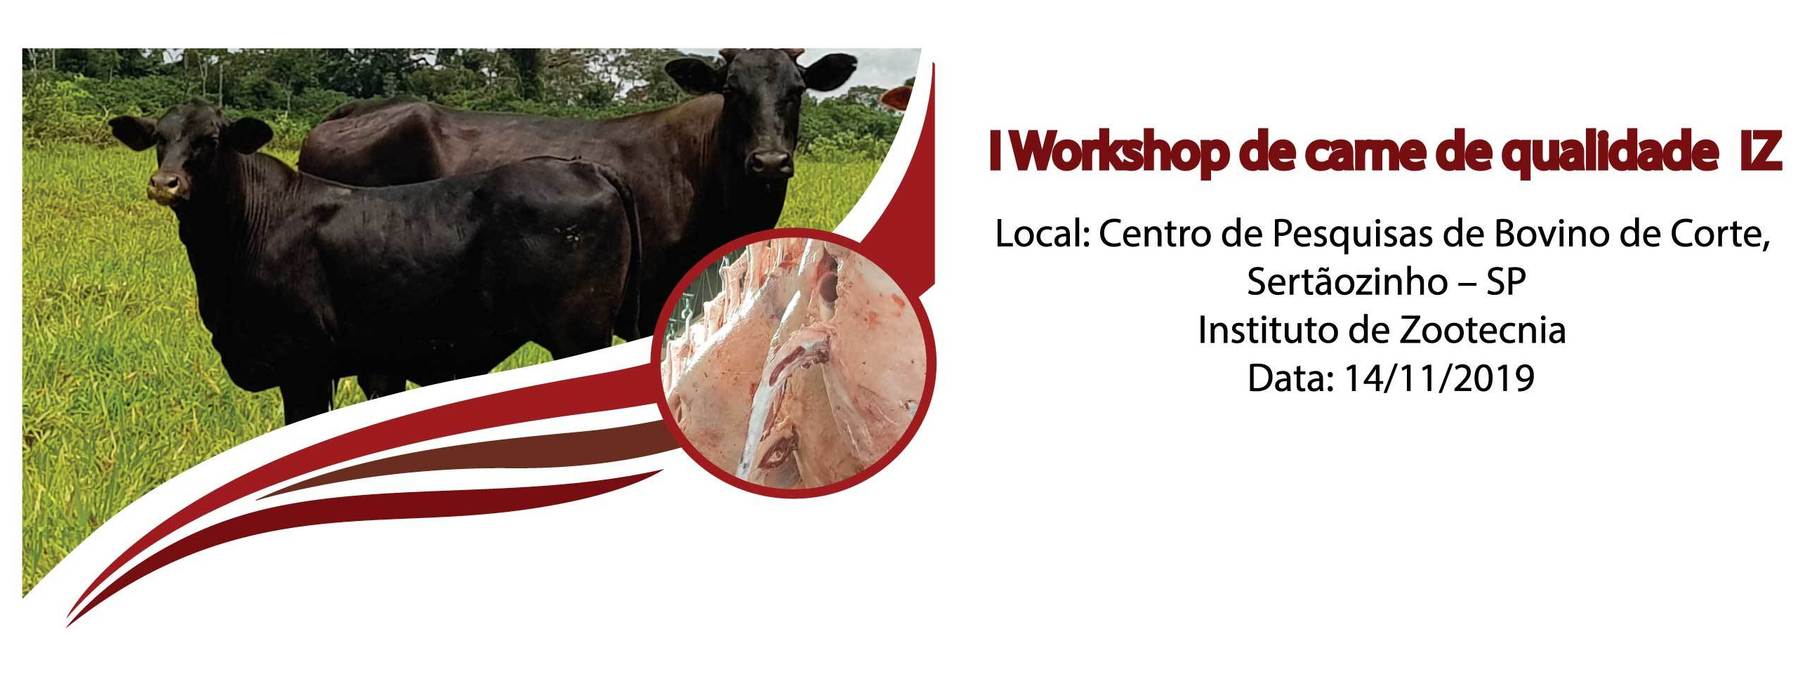 I Workshop de carne de qualidade IZ